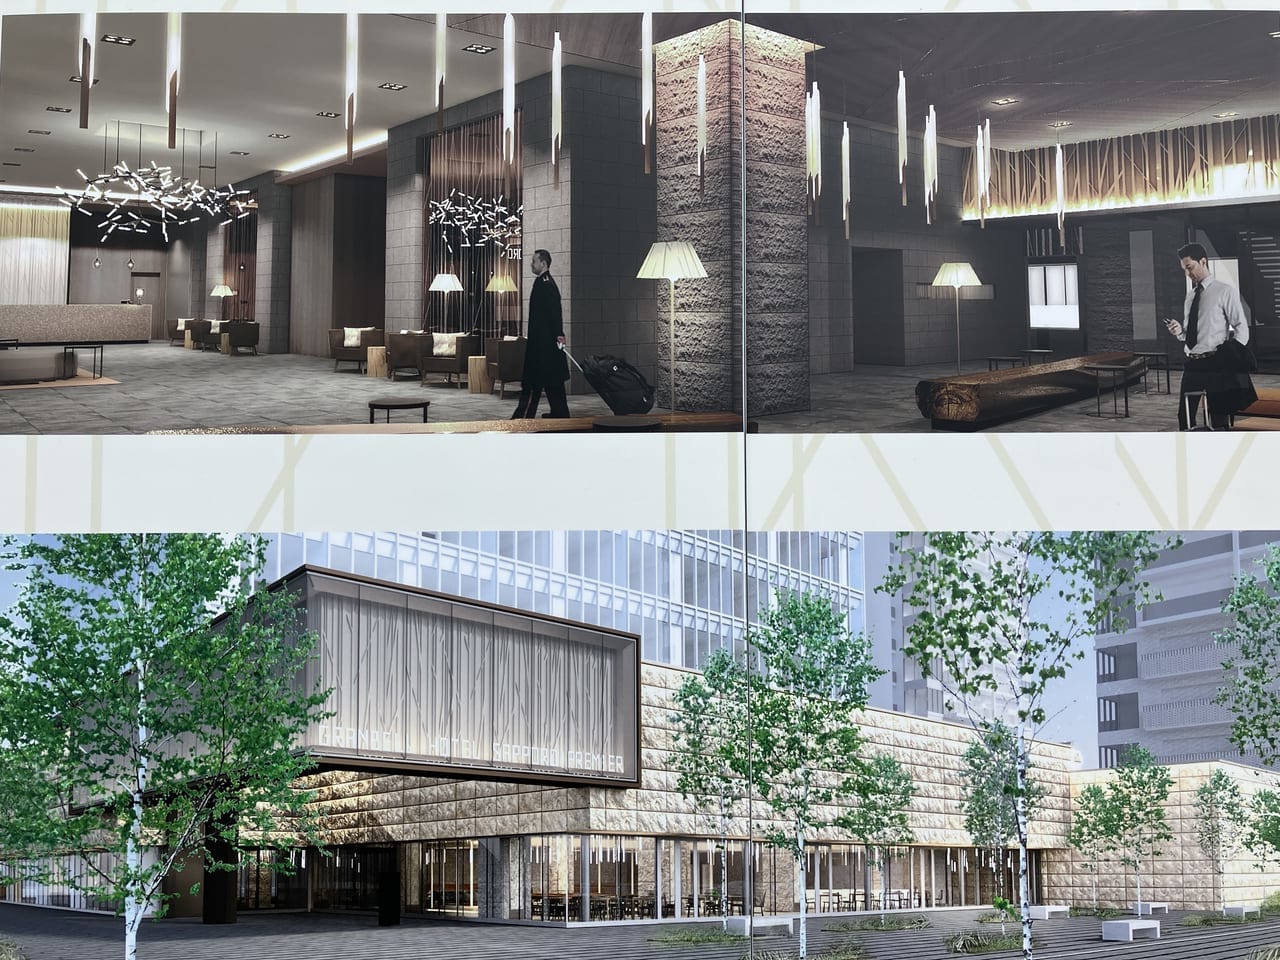 【札幌市東区】札幌駅北口エリア再開発中。東区に大型ホテルが建築中でしたよ。